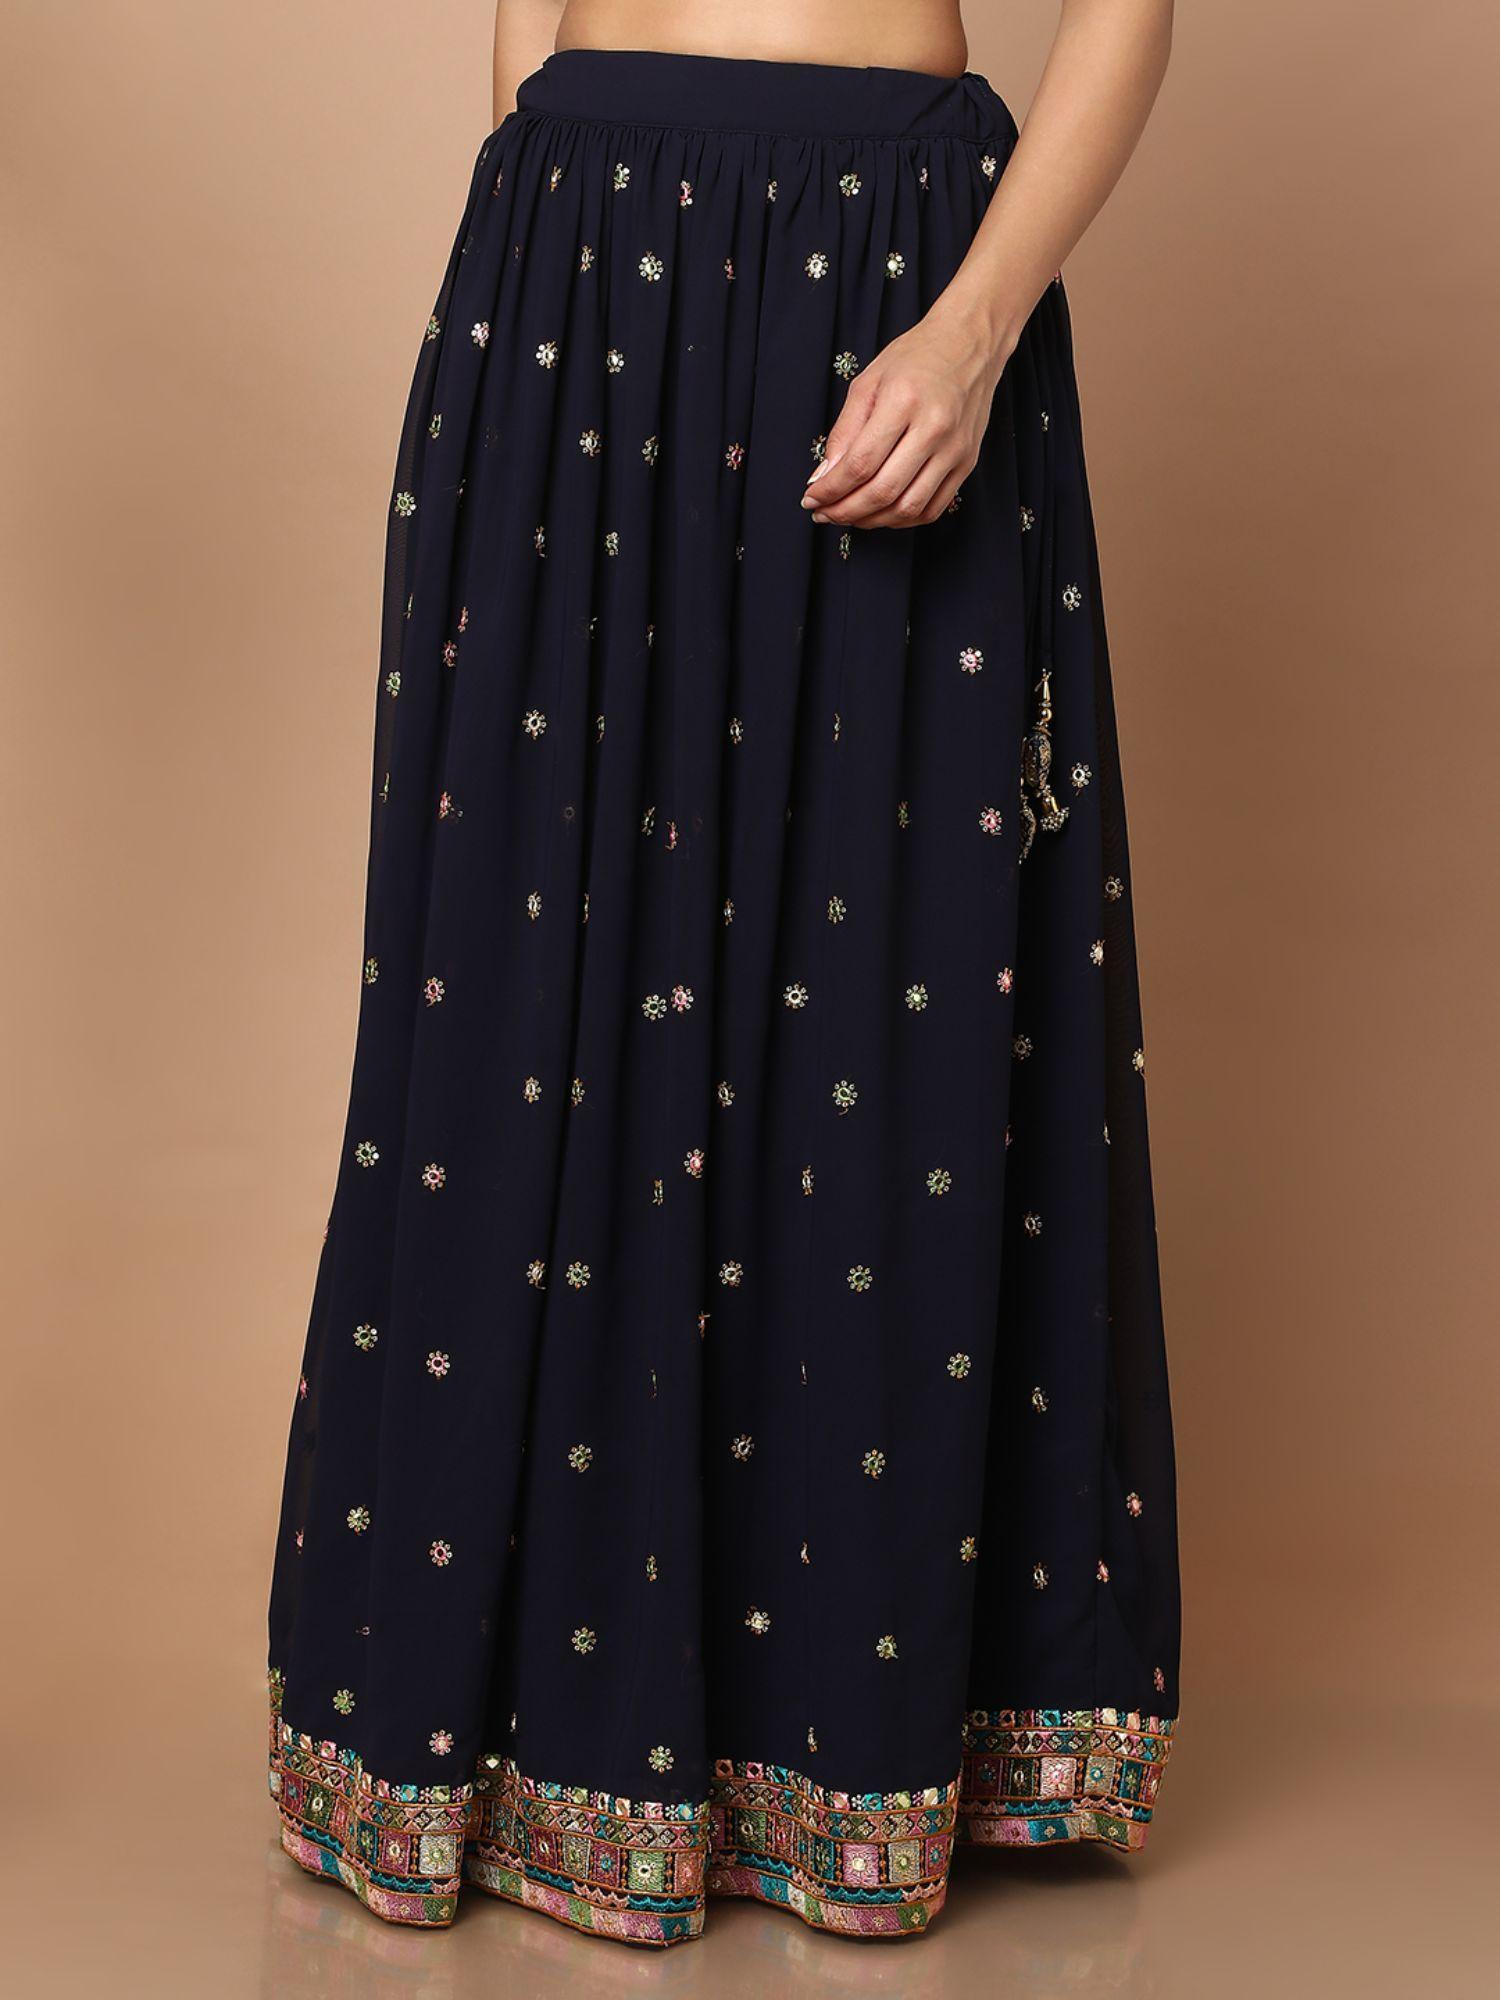 womens navy blue net ethnic skirt